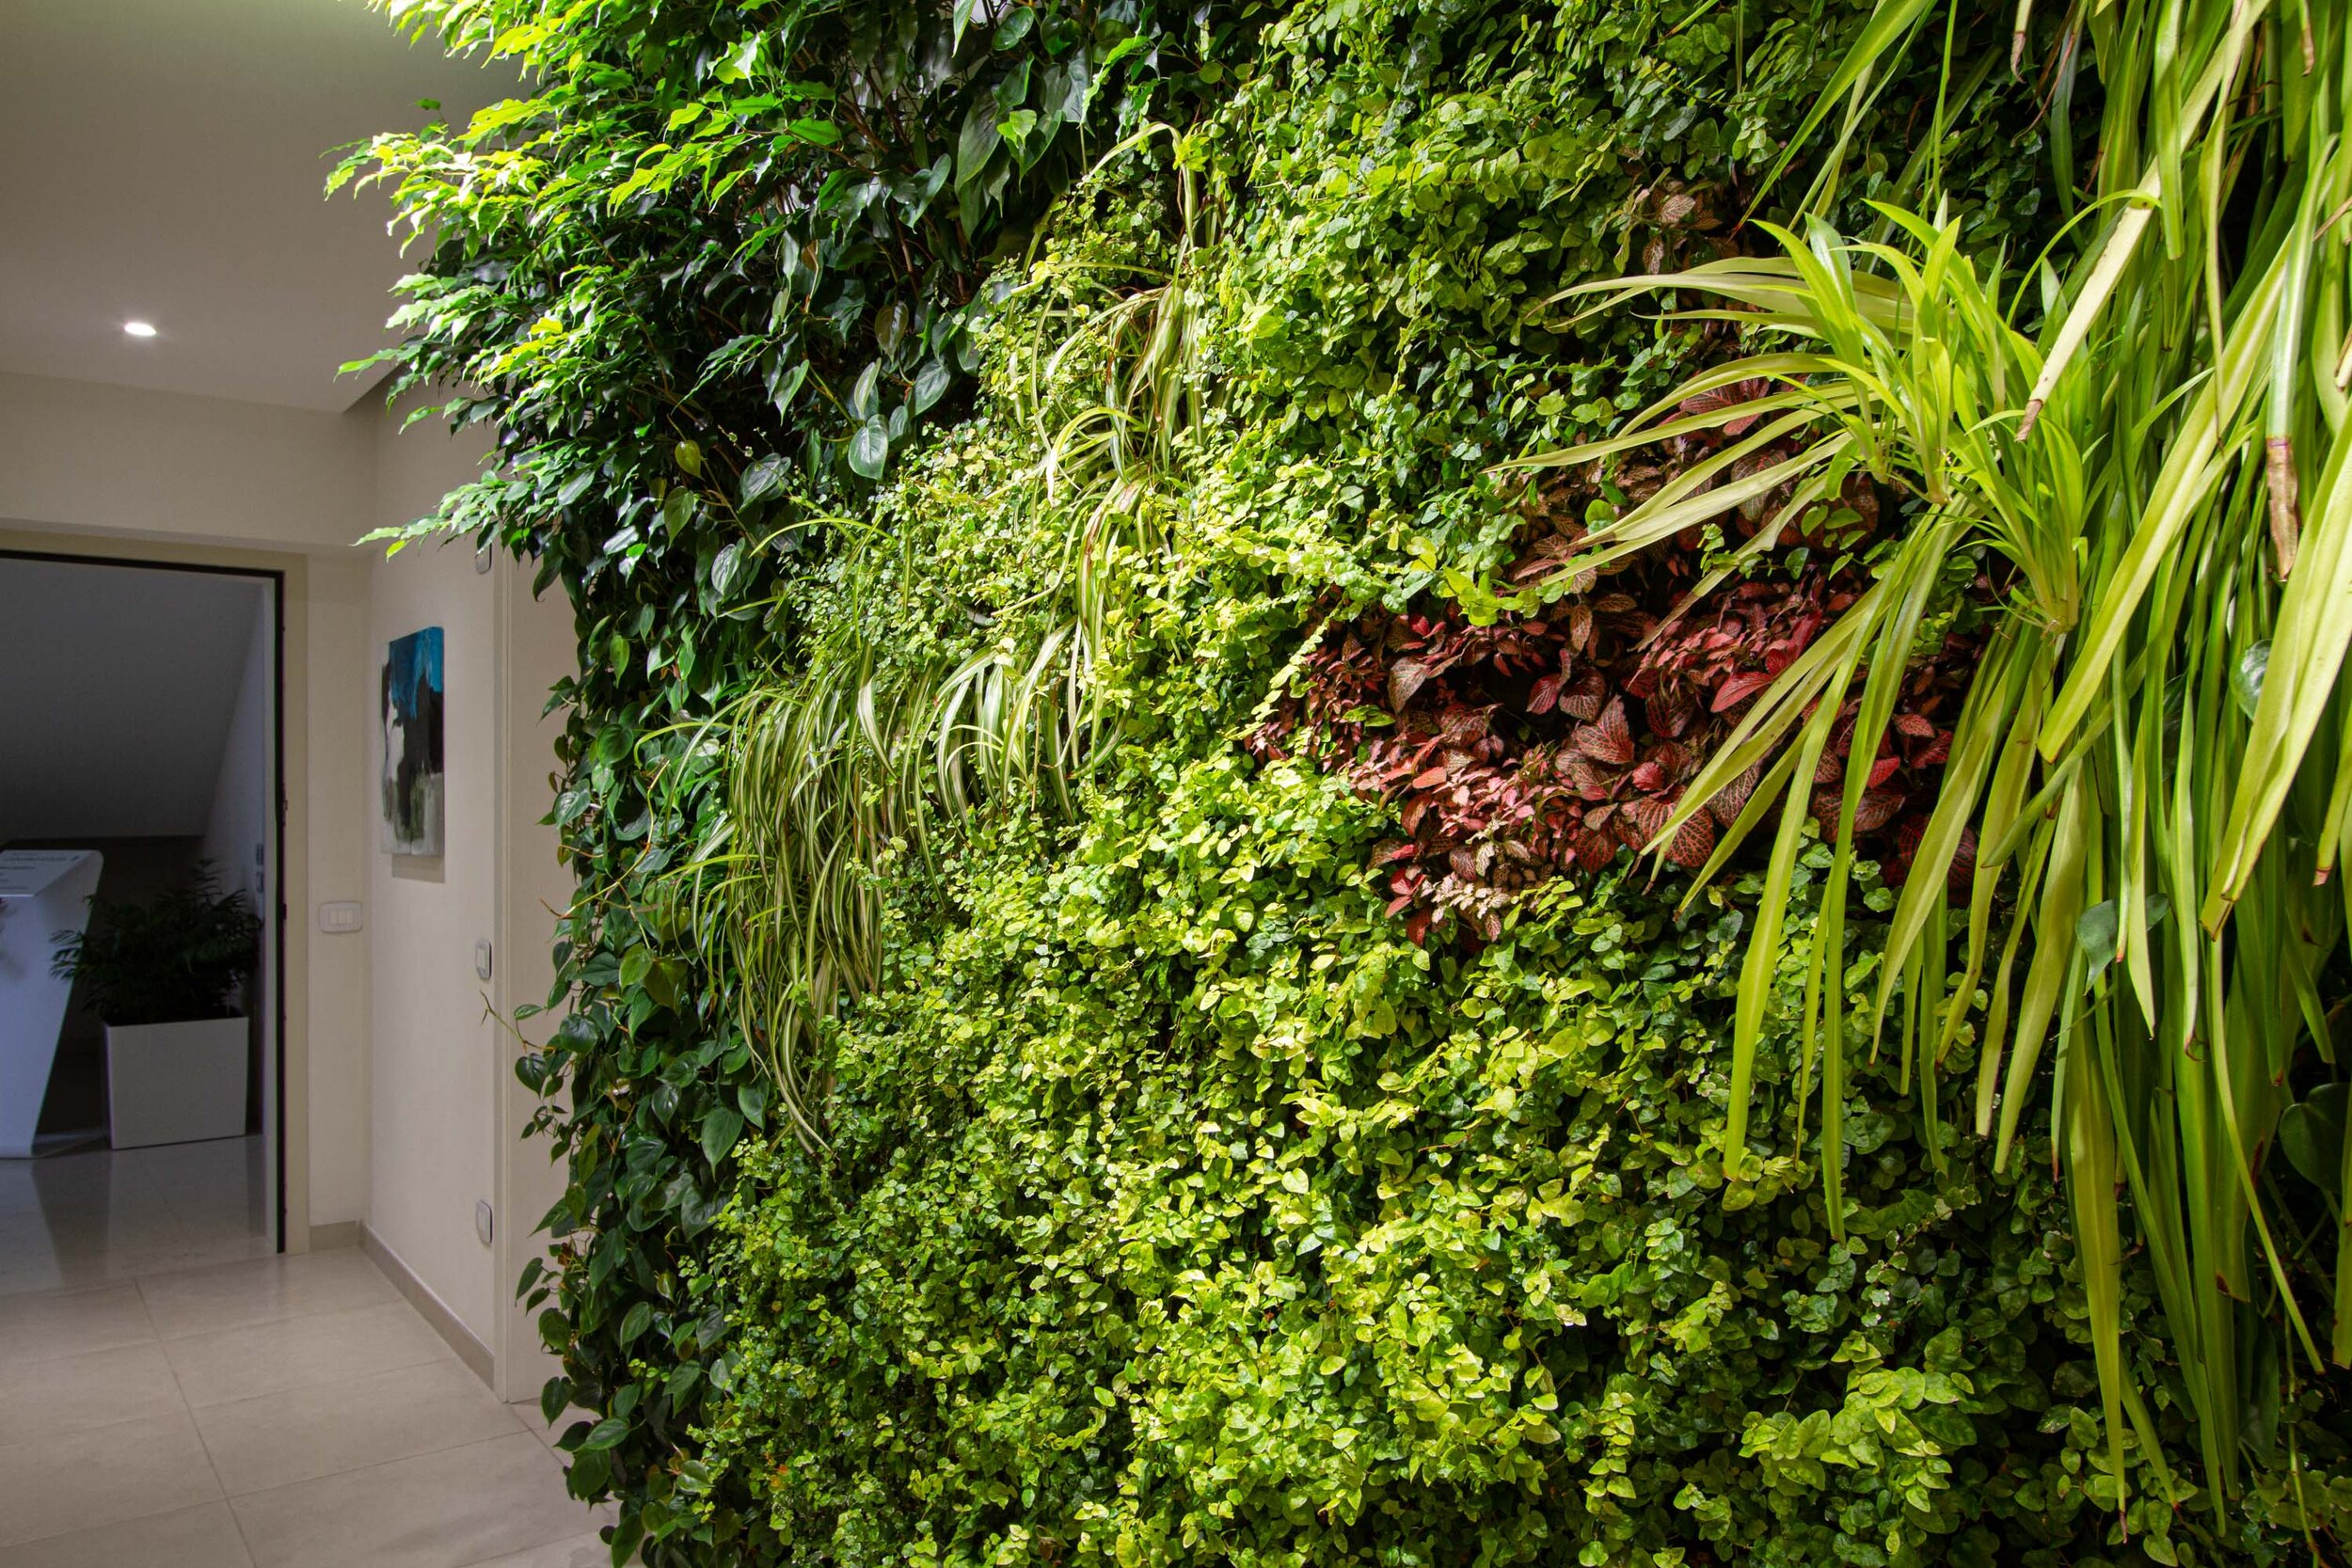 studio-cavazza-garden-vertical-wall-green-sundar-italia-007.JPG